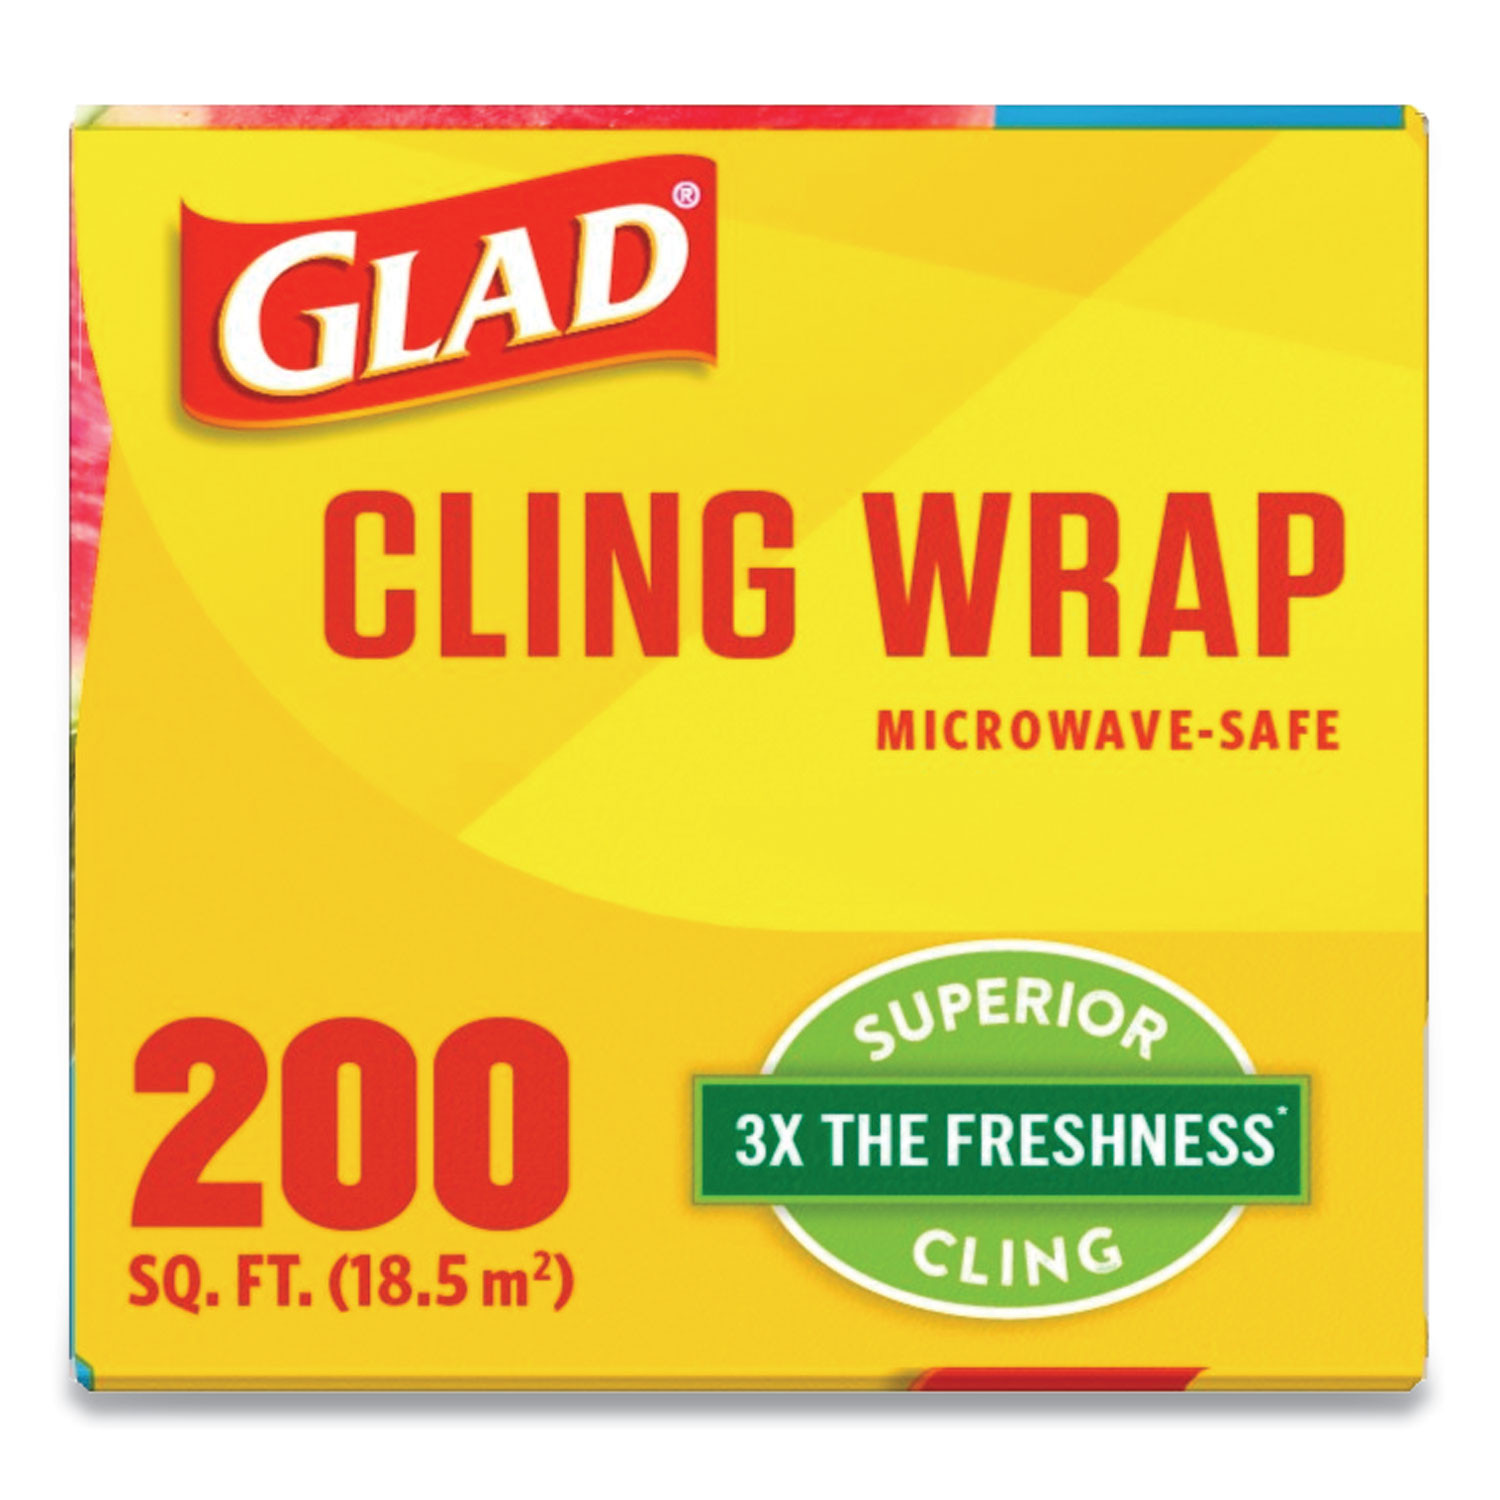 Glad Press'n Seal Food Plastic Wrap, 70 Square Foot Roll, 12 Rolls